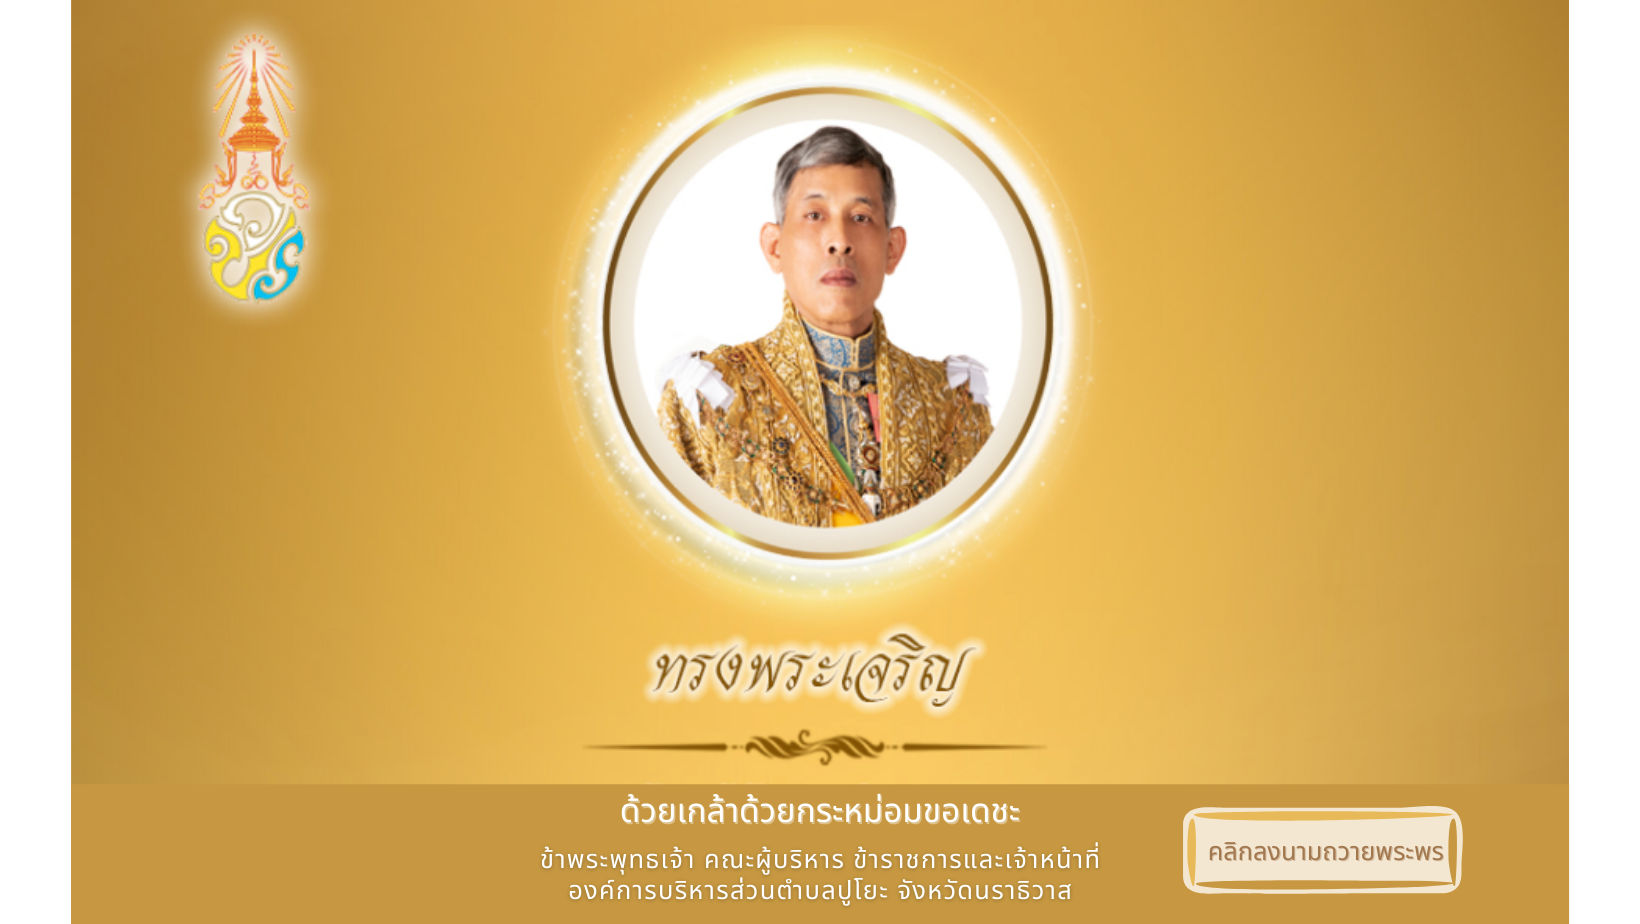 องค์การบริหารส่วนตำบลปูโยะ ขอเชิญประชาชนชาวไทย ร่วมลงนามถวายพระพร เนื่องในวันฉัตรมงคล วันที่ 4 พฤษภาคม 2565 ตลอดเดือนพฤษภาคม